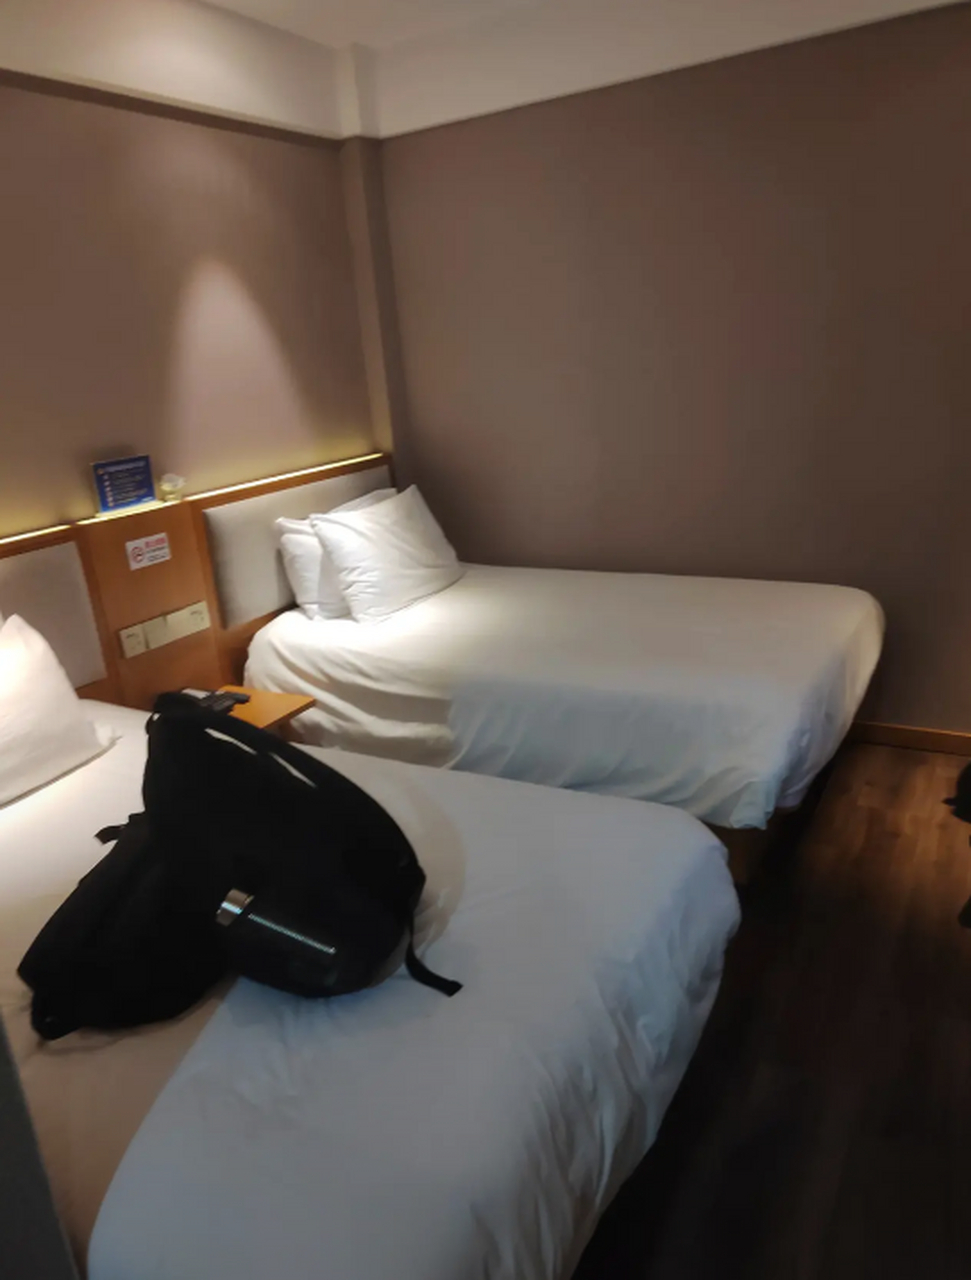 这个宾馆太贵了,坐标北京,连锁酒店一晚上接近700元人民币,房间只有5